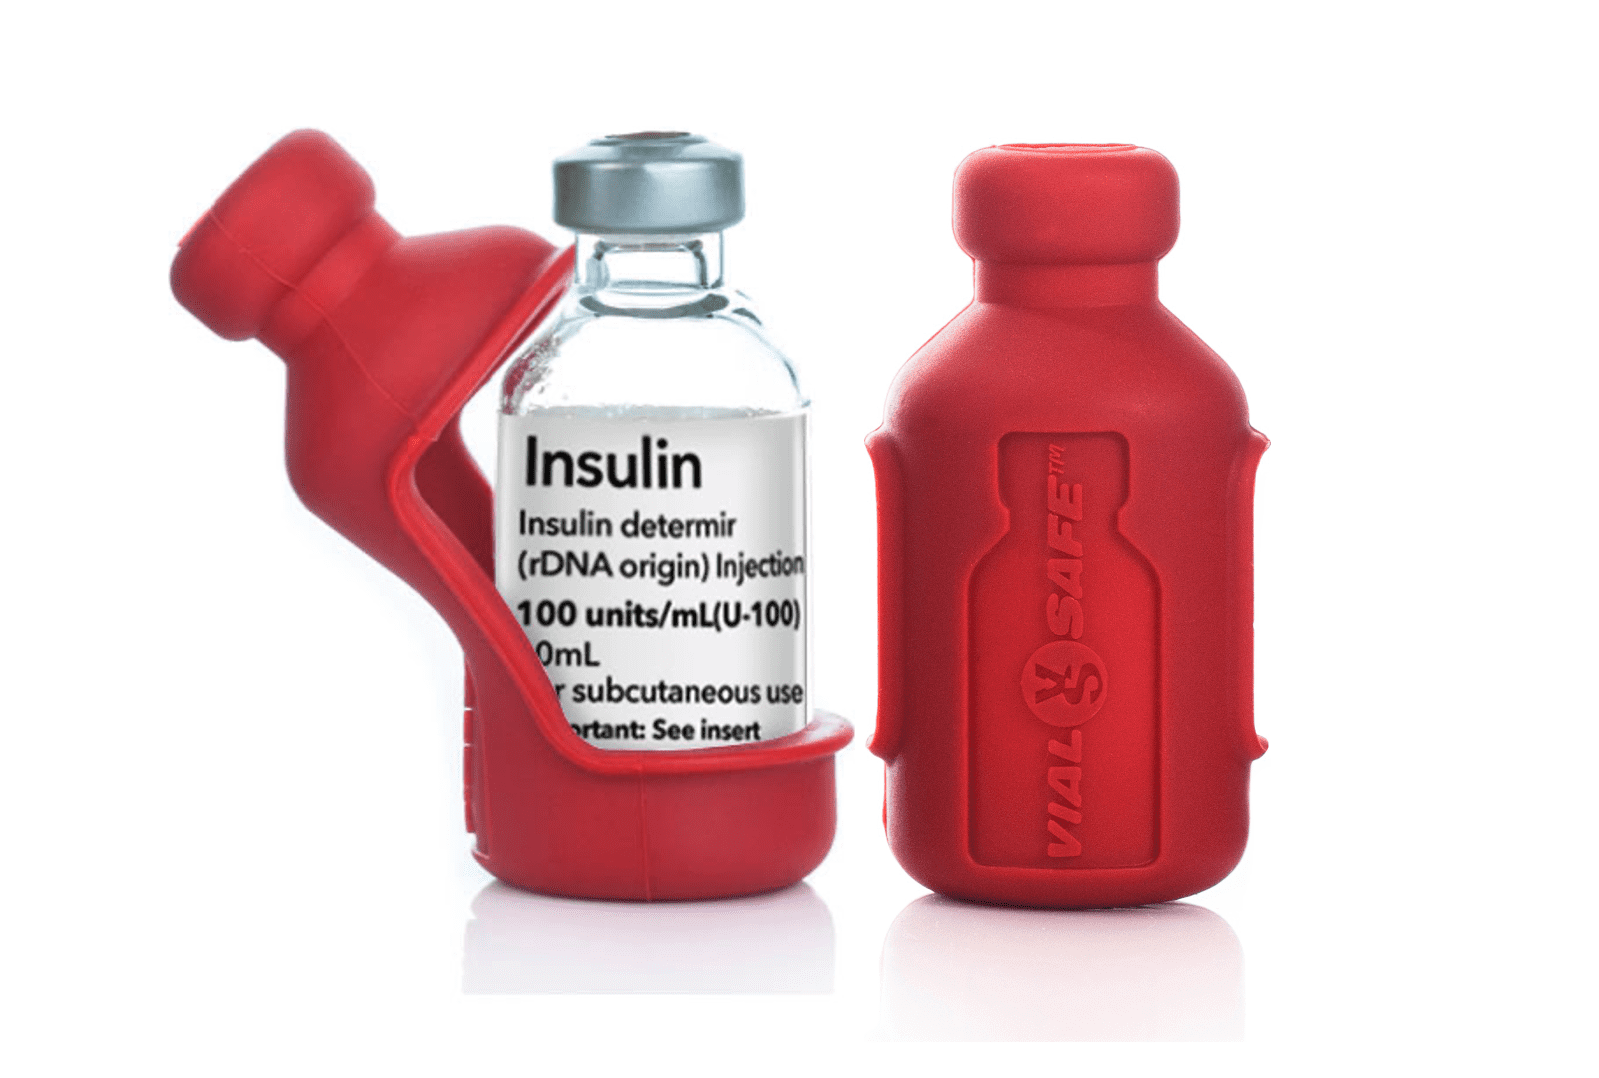 Item 18558 - High Alert Insulin Bin - 1405 Red